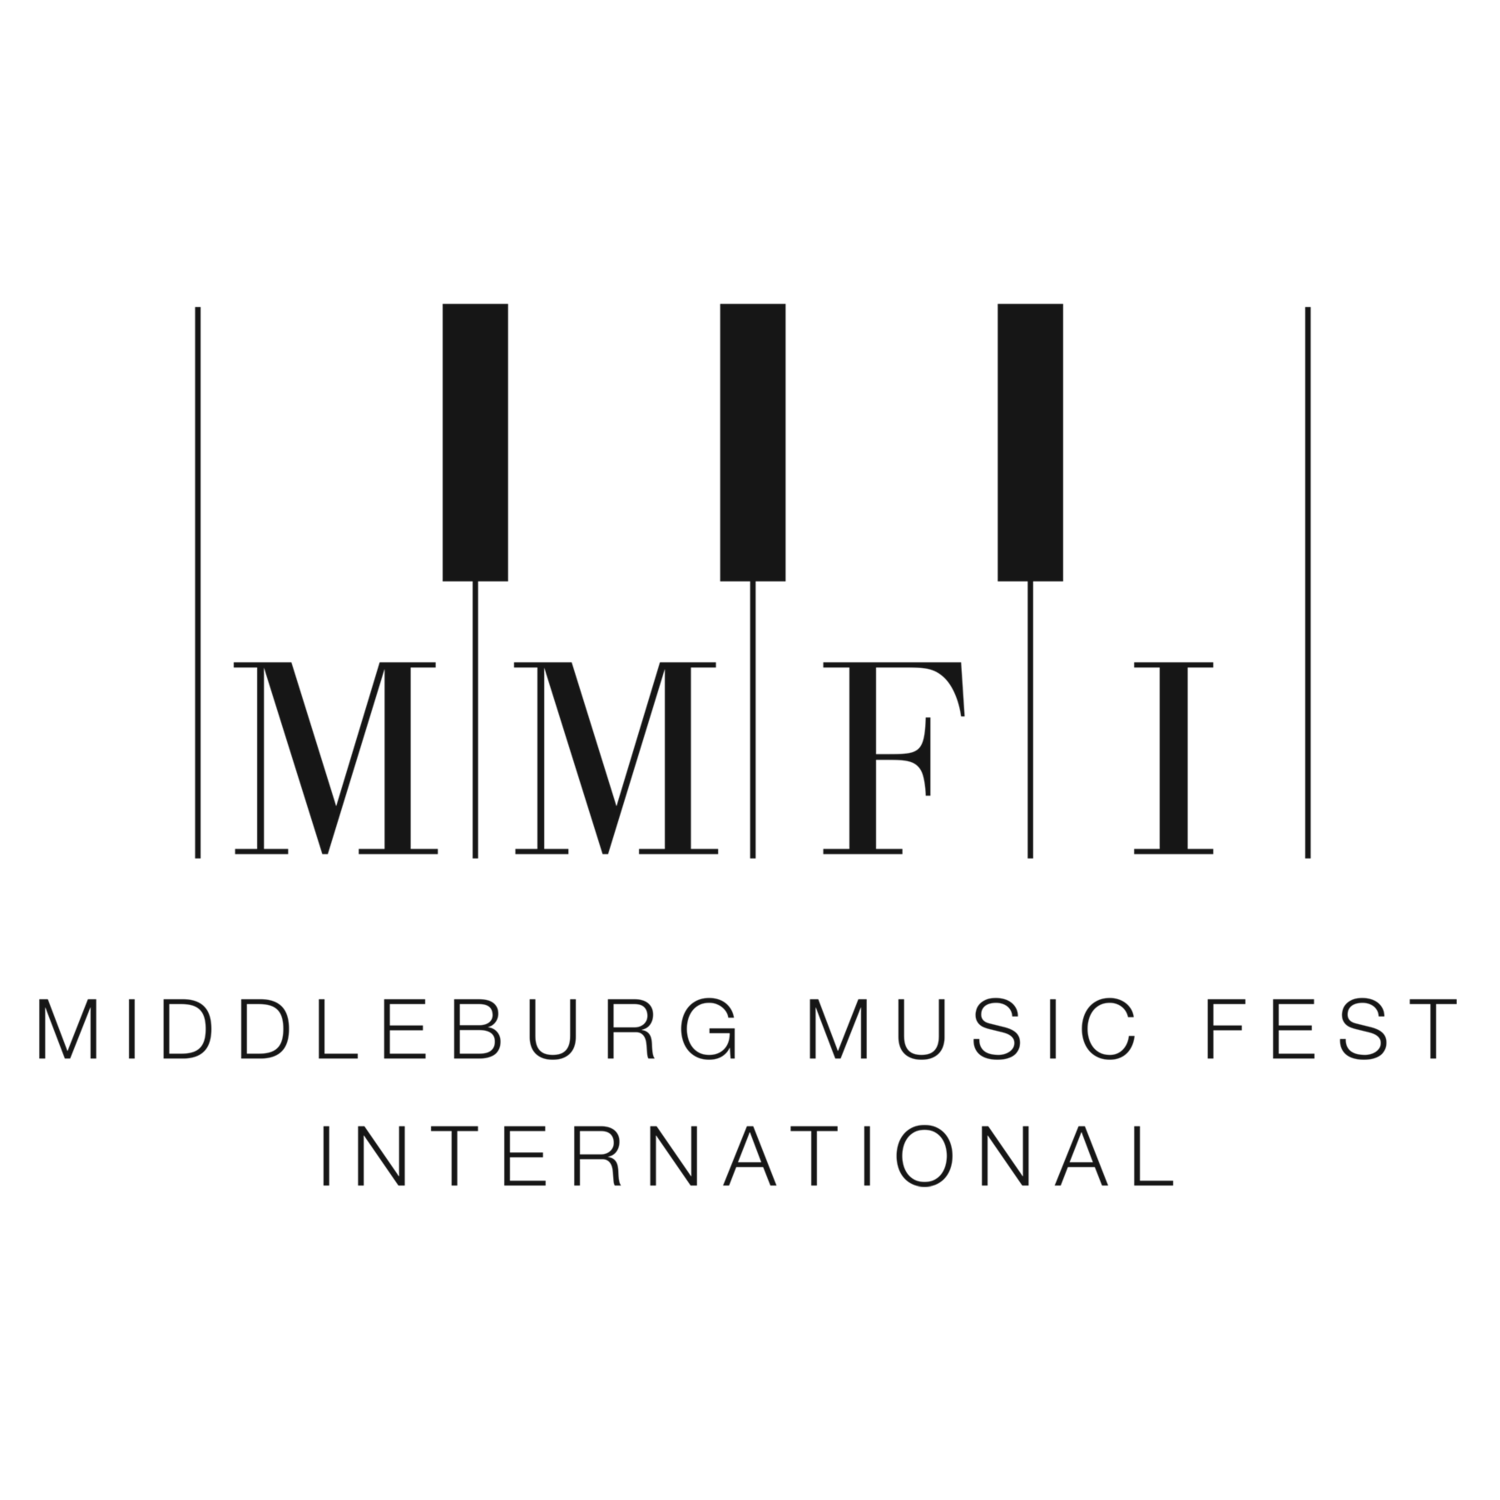 Middleburg Music Fest International